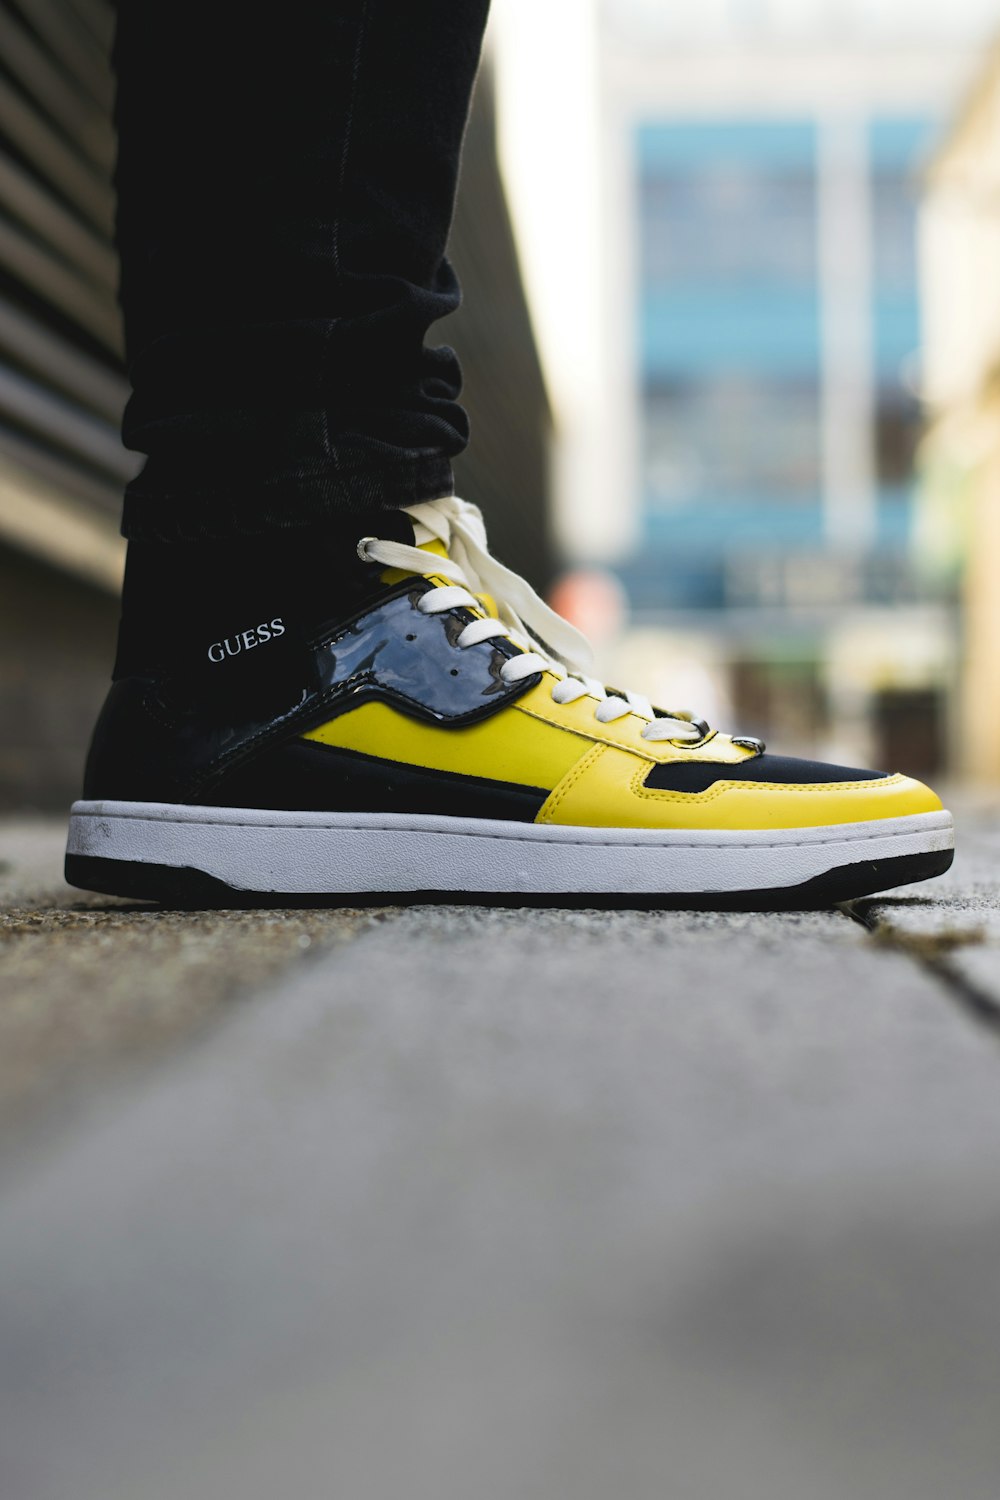 Foto par de zapatillas altas Guess amarillas y negras – Imagen Ropa gratis  en Unsplash